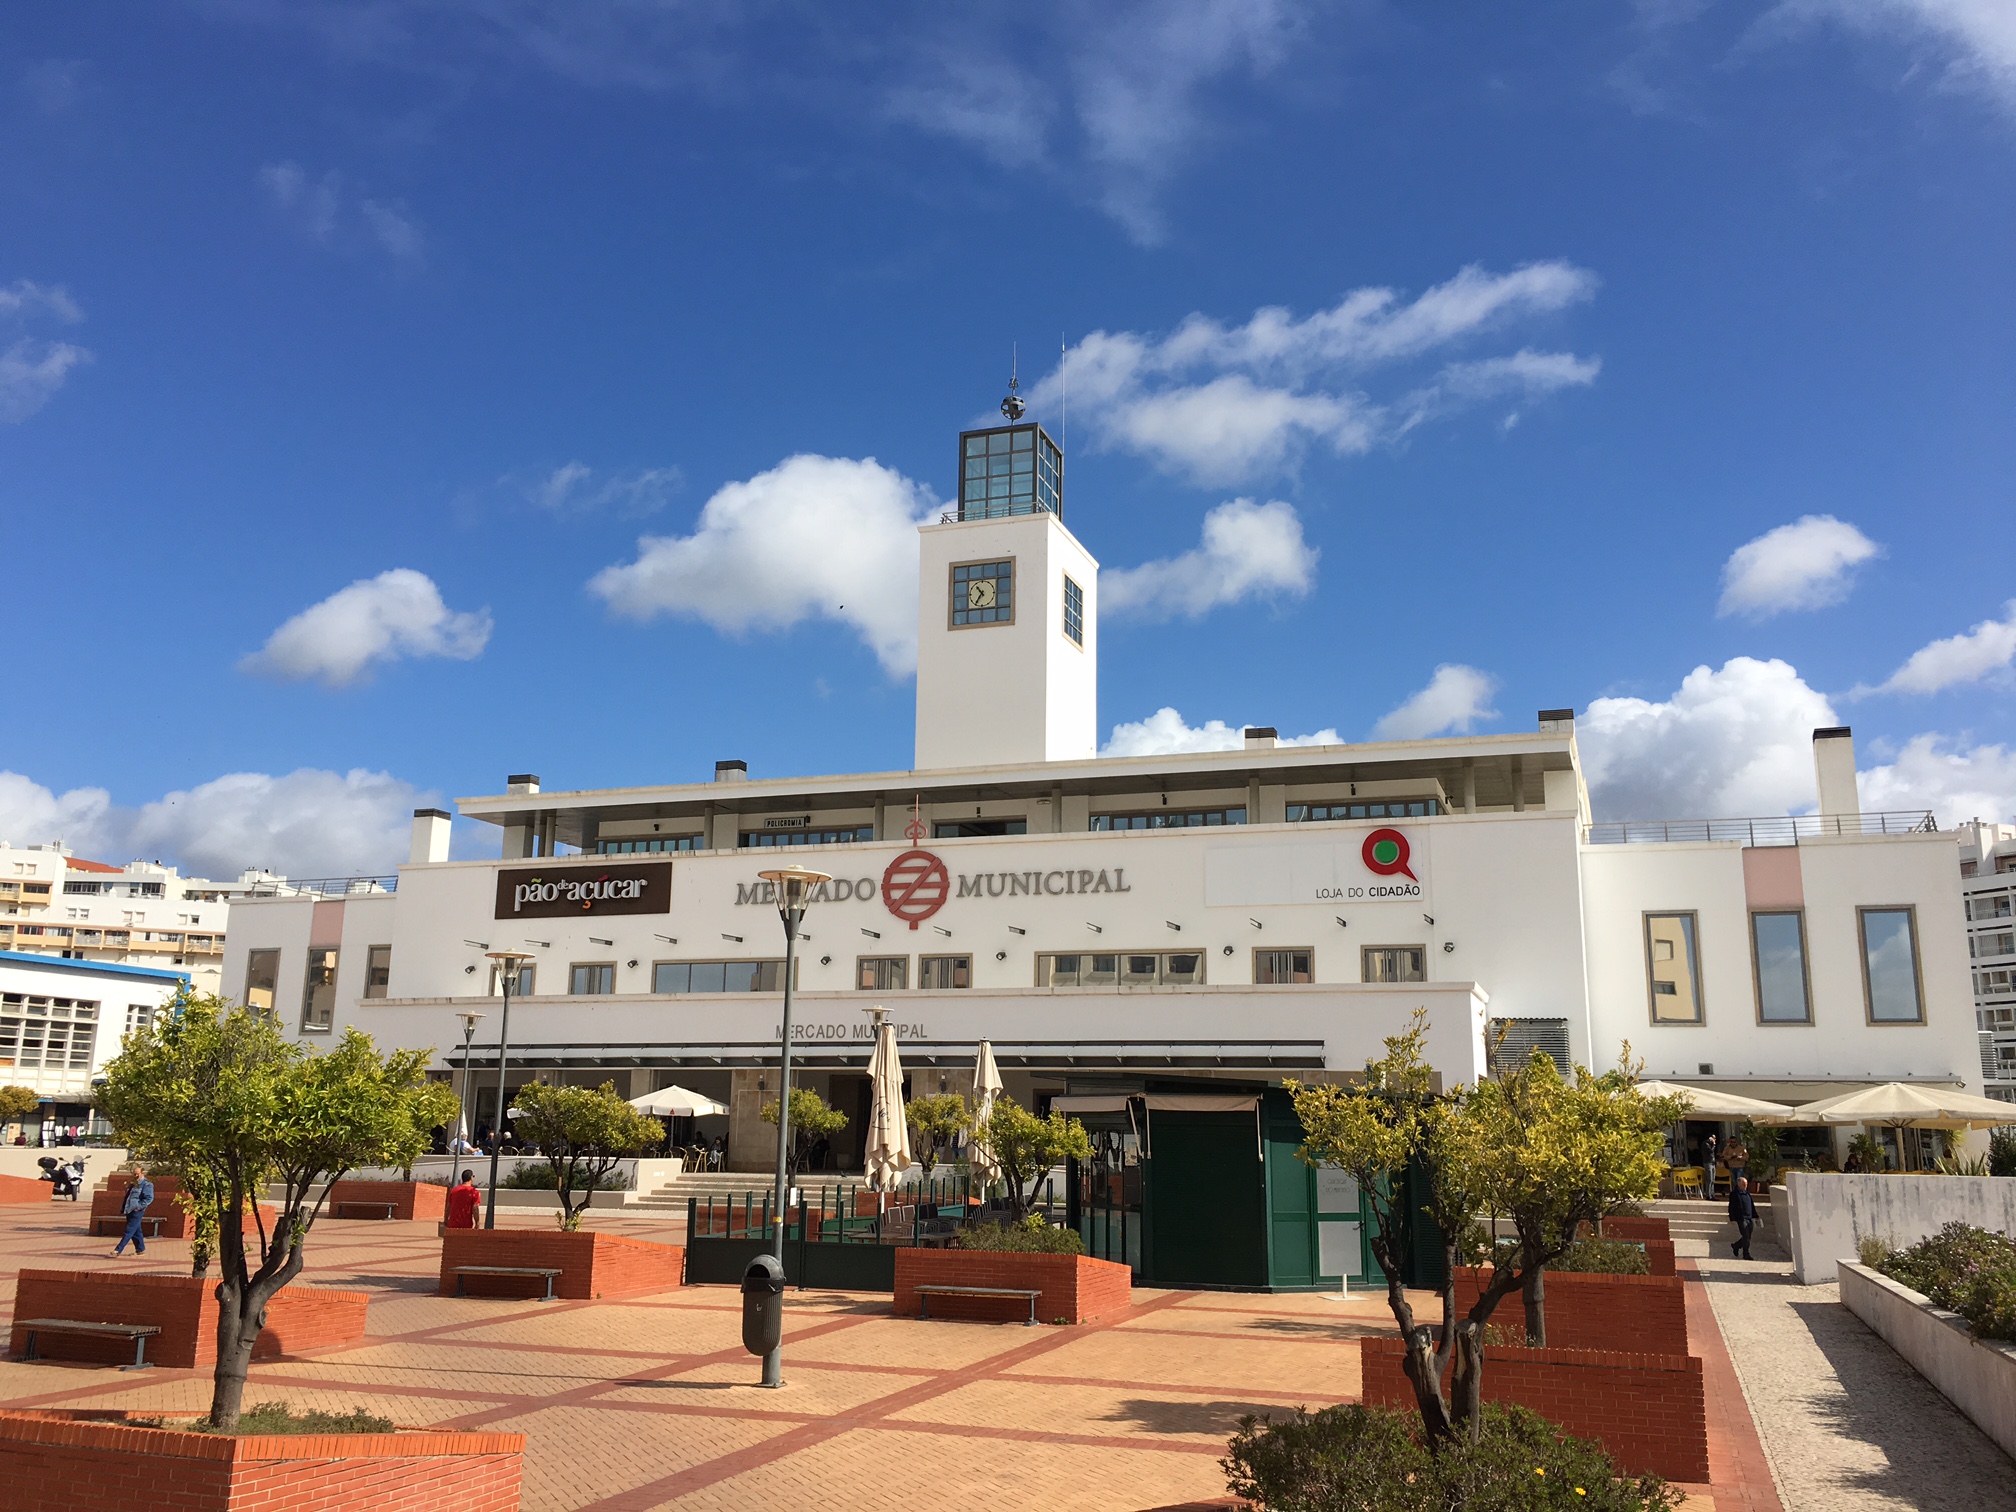 Municipal Market of Faro